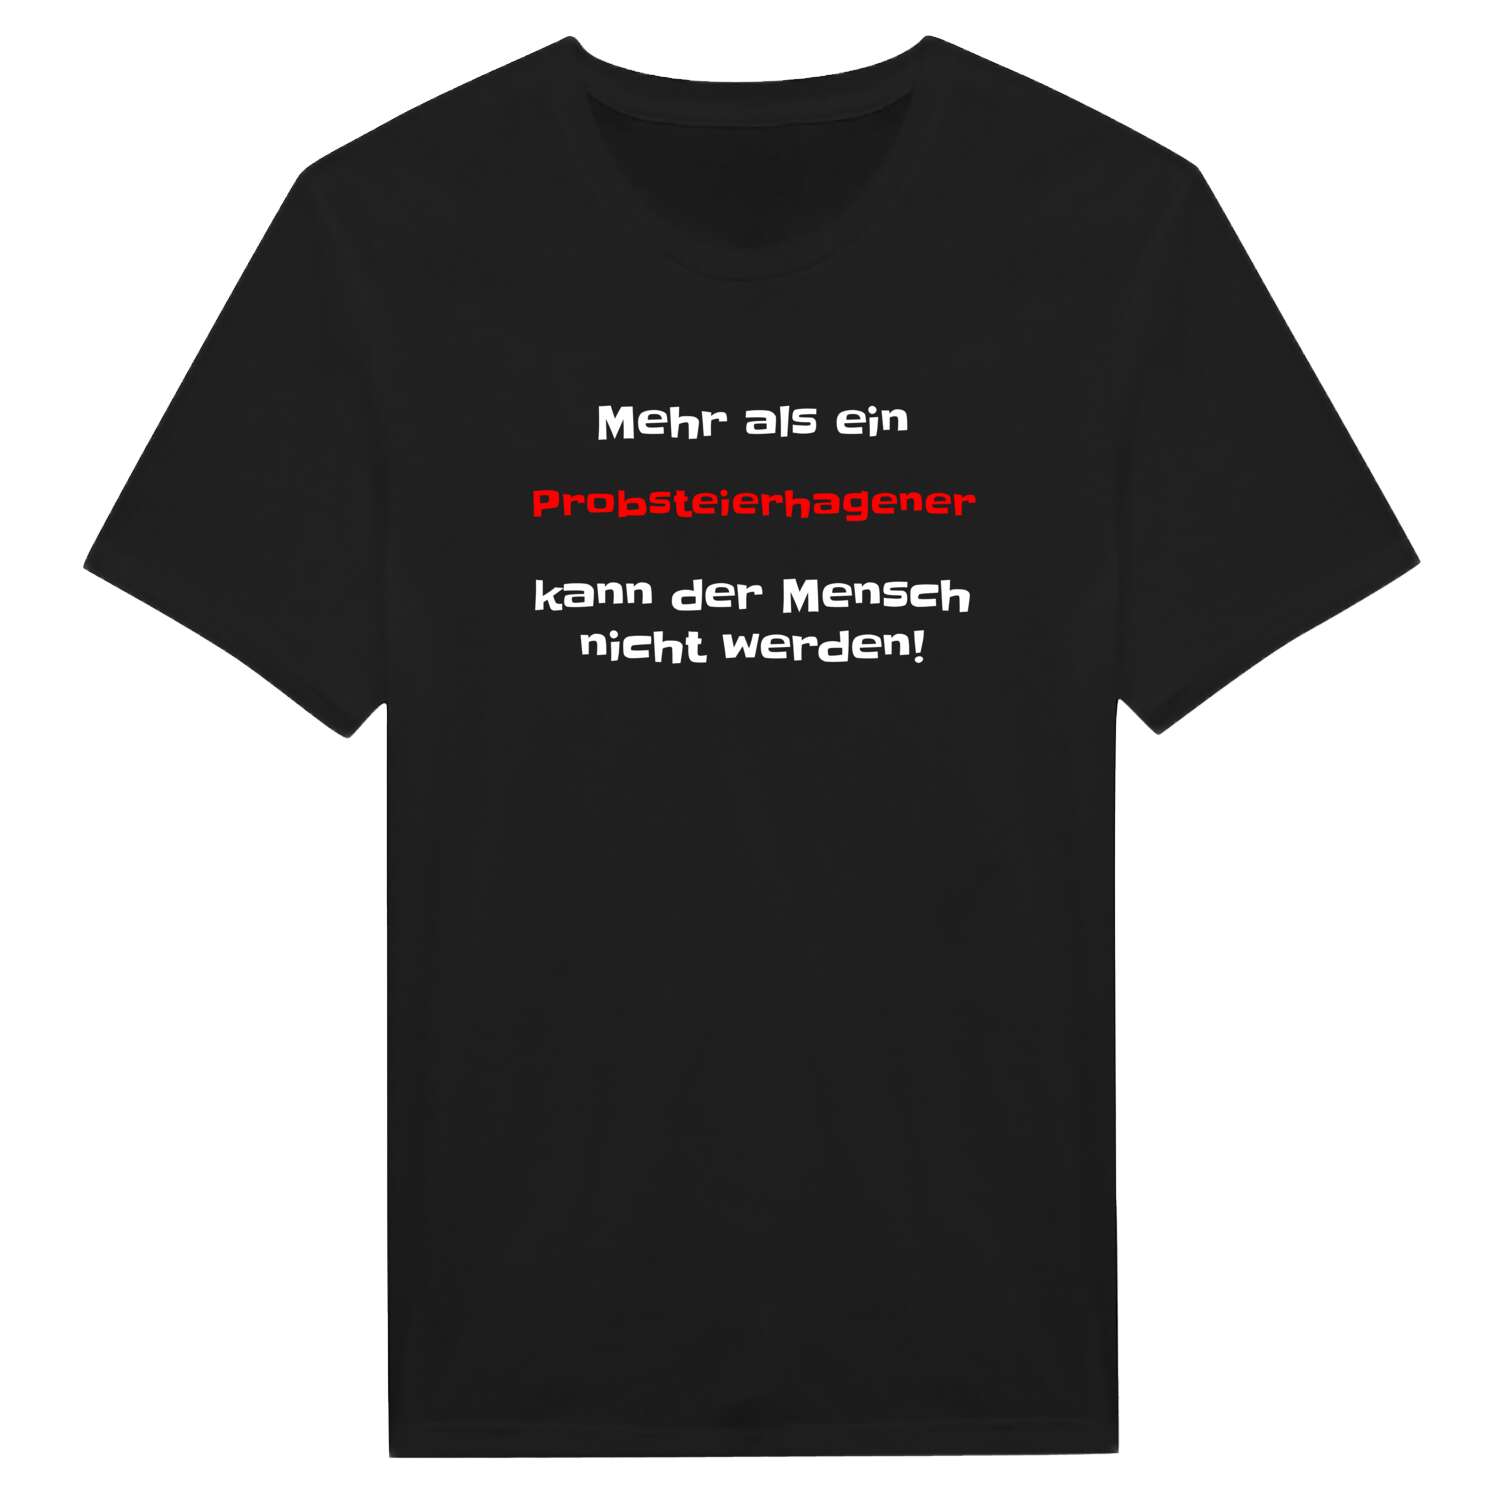 Probsteierhagen T-Shirt »Mehr als ein«